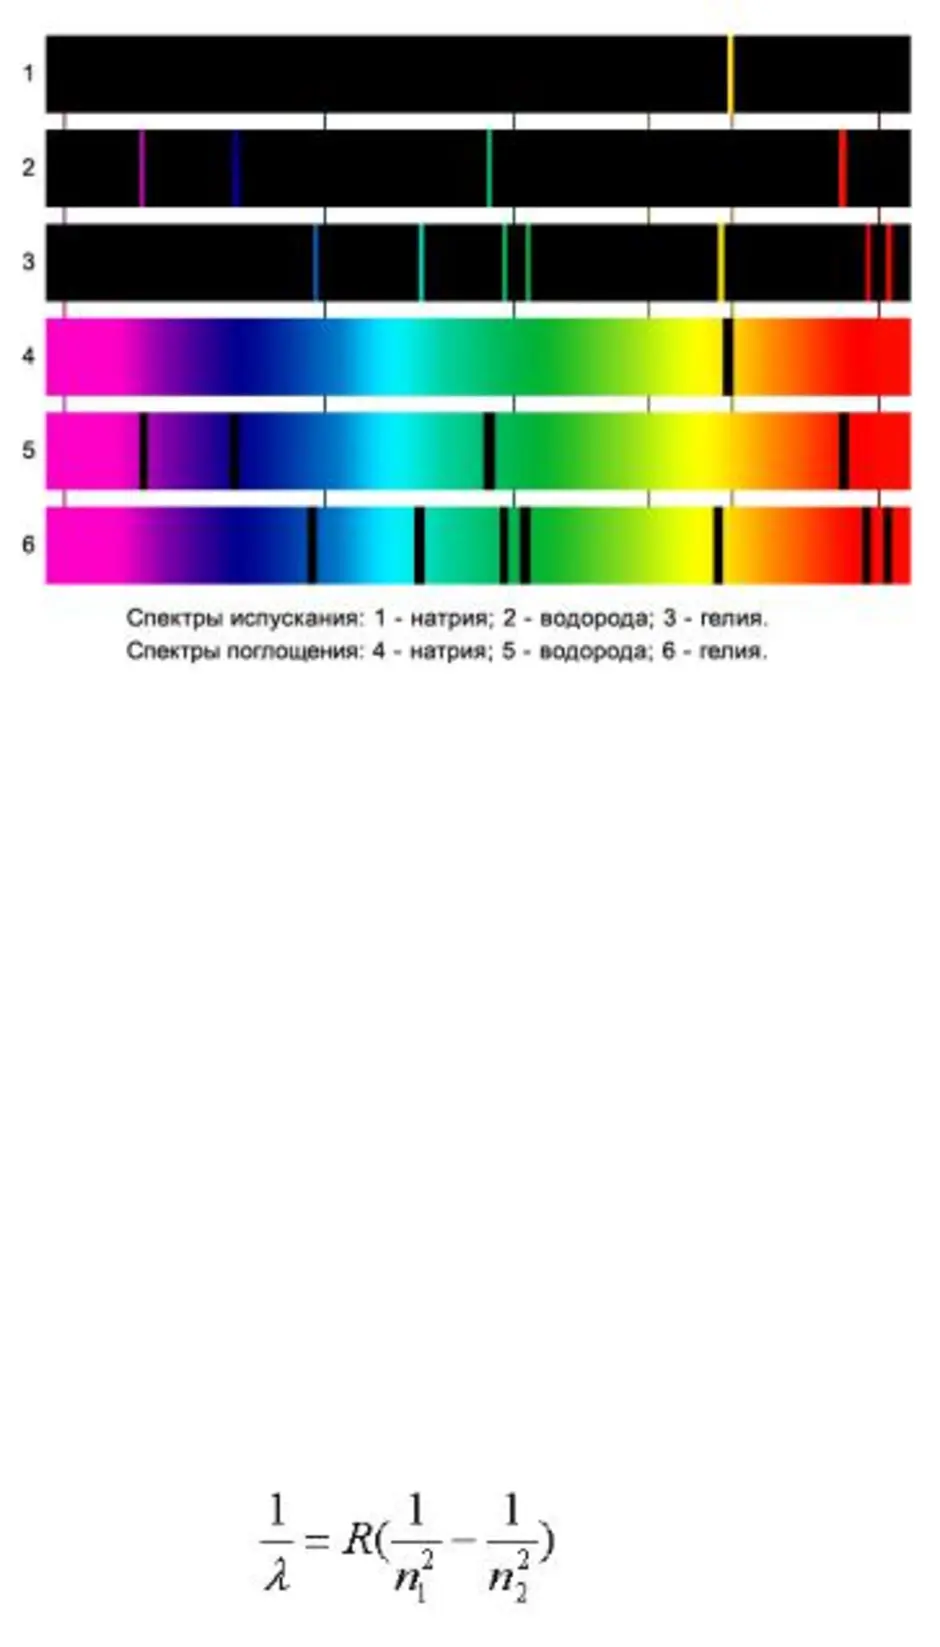 Водородный спектр. Линейчатый спектр испускания кислорода. Линейчатый спектр кислорода цвета. Линейчатый спектр излучения водорода. Линейчатый спектр водорода цвета.